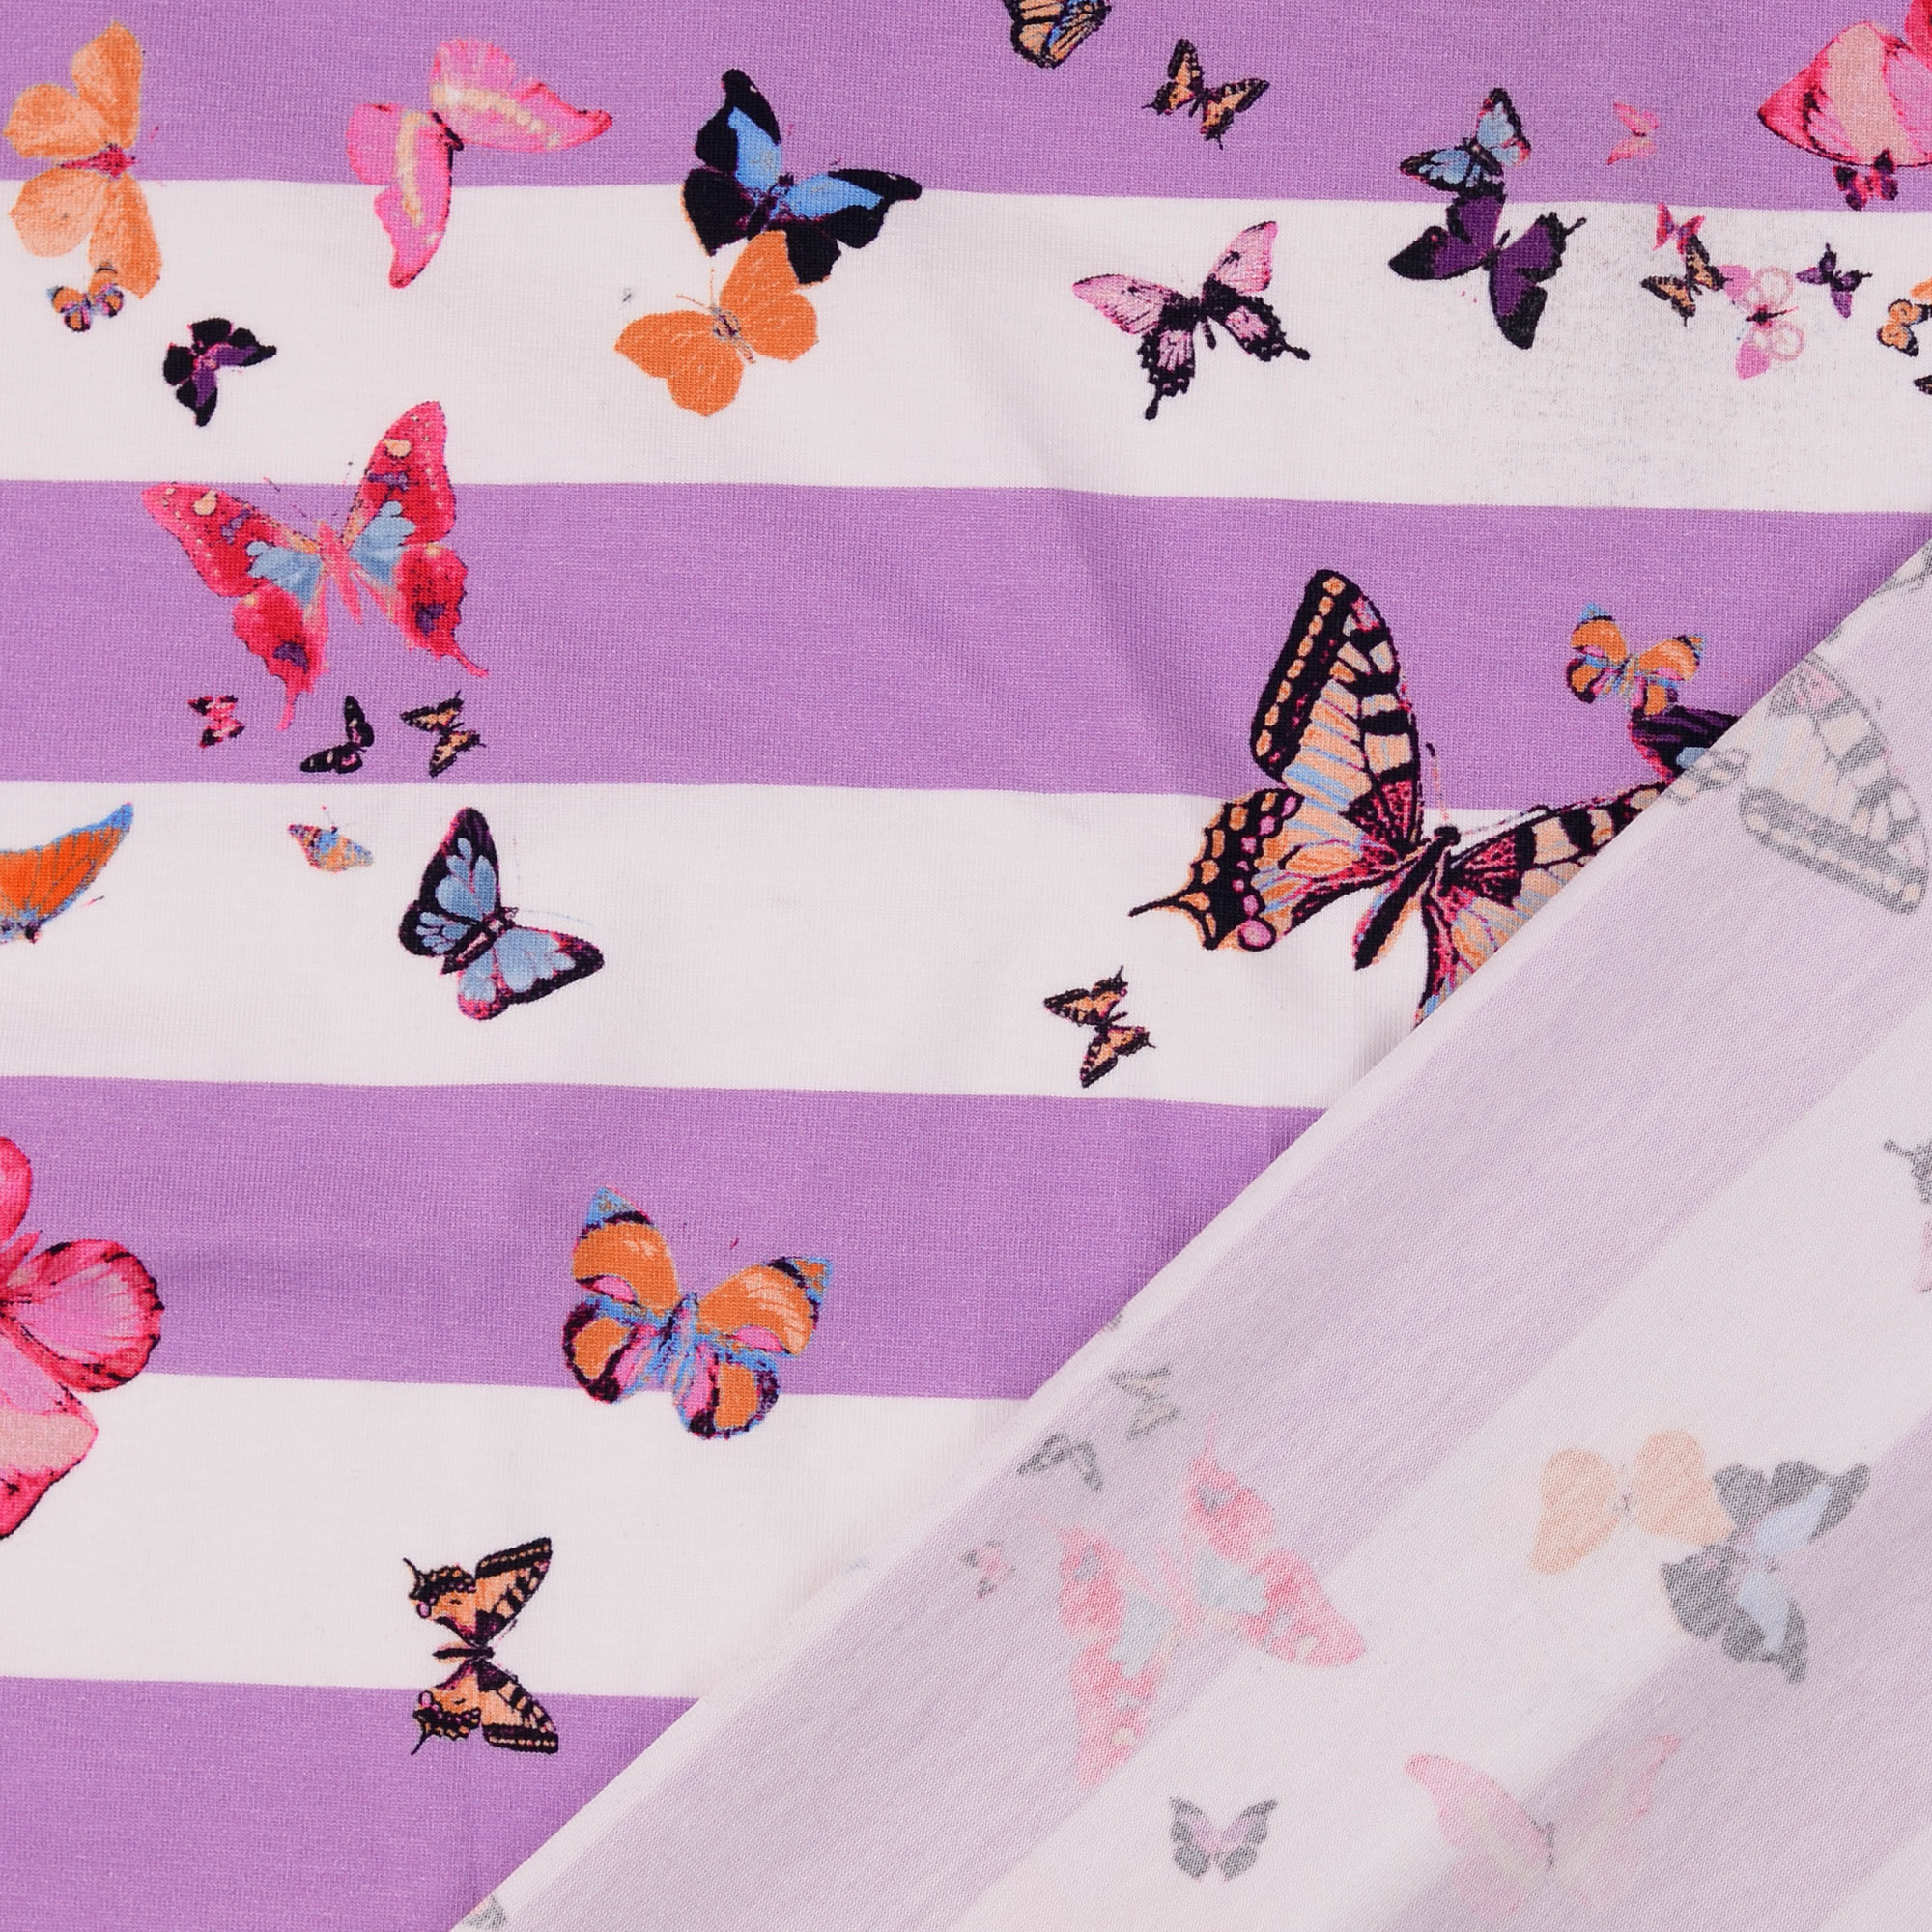 Jersey Schmetterlinge auf Streifen Flieder/Weiß Digital